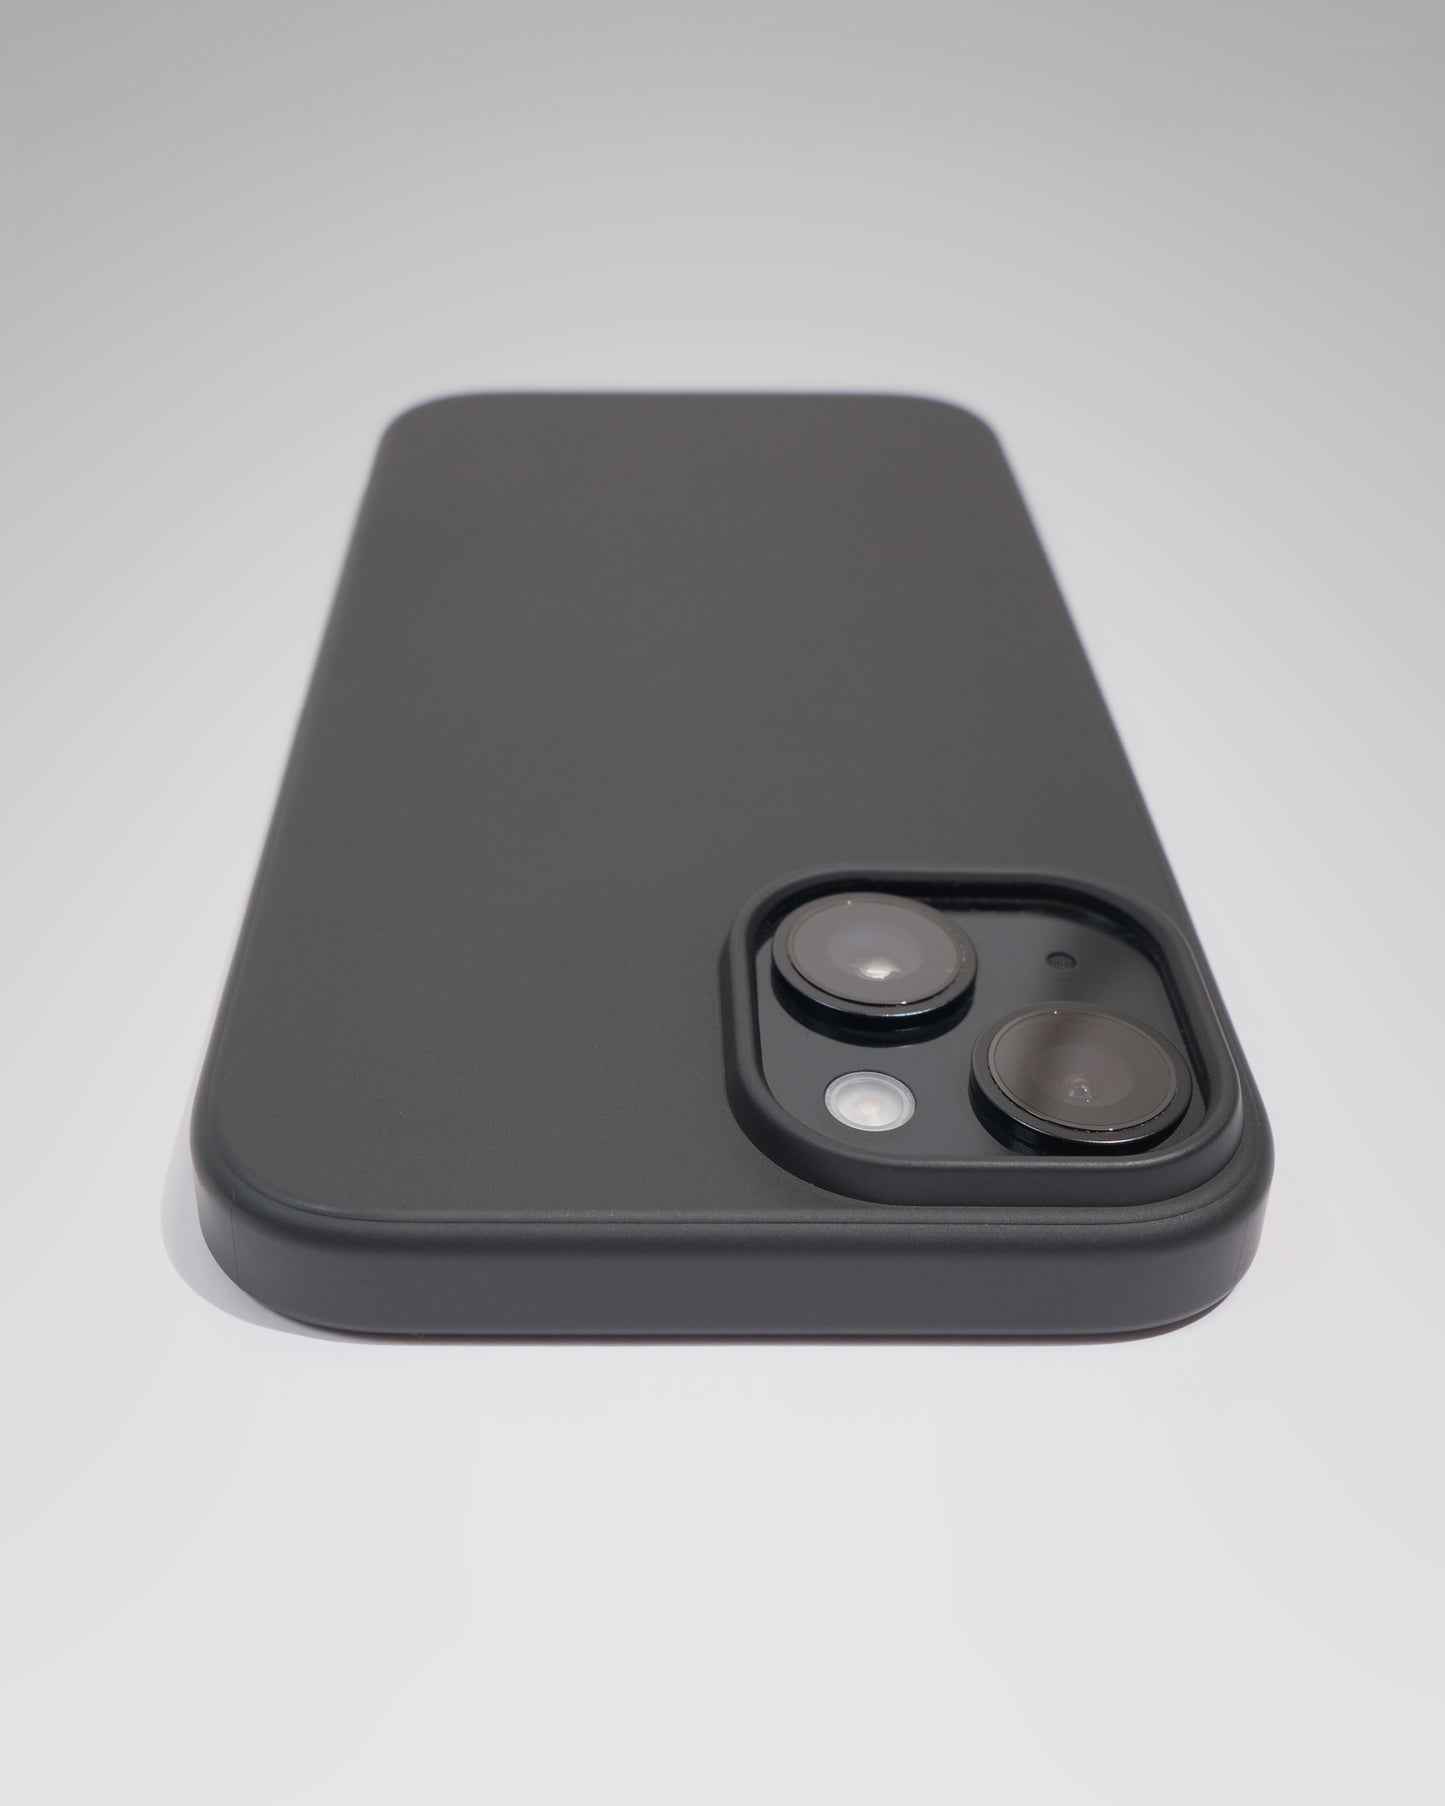 UltraThin case / for iPhone 14 / Matt black